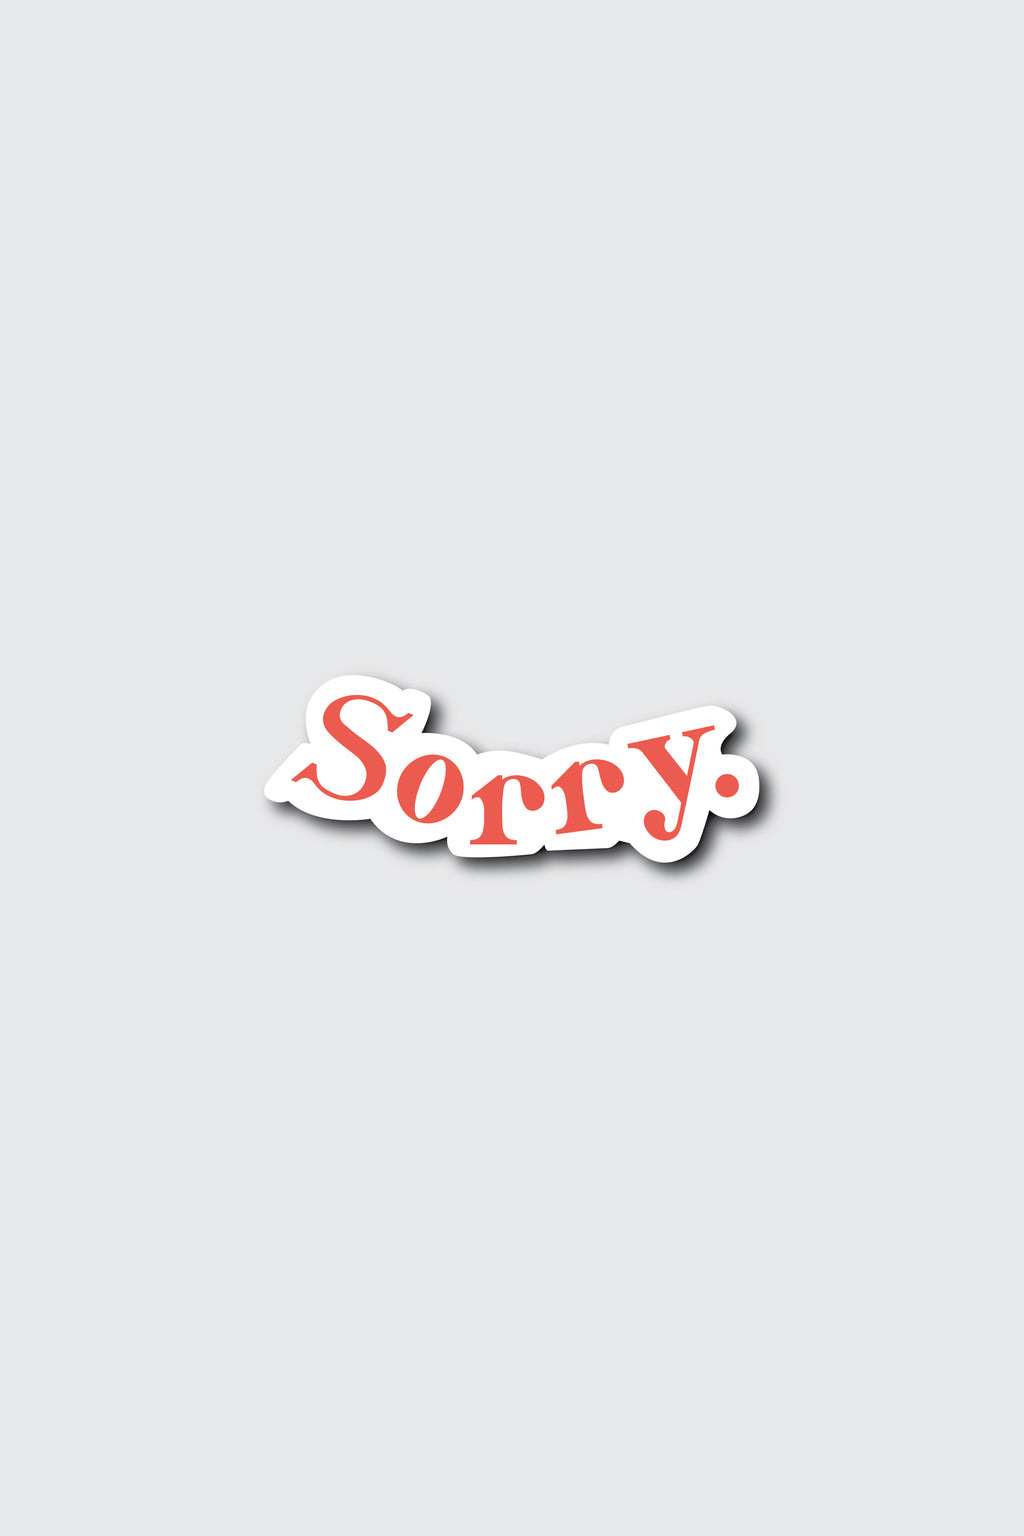 Sorry Sticker